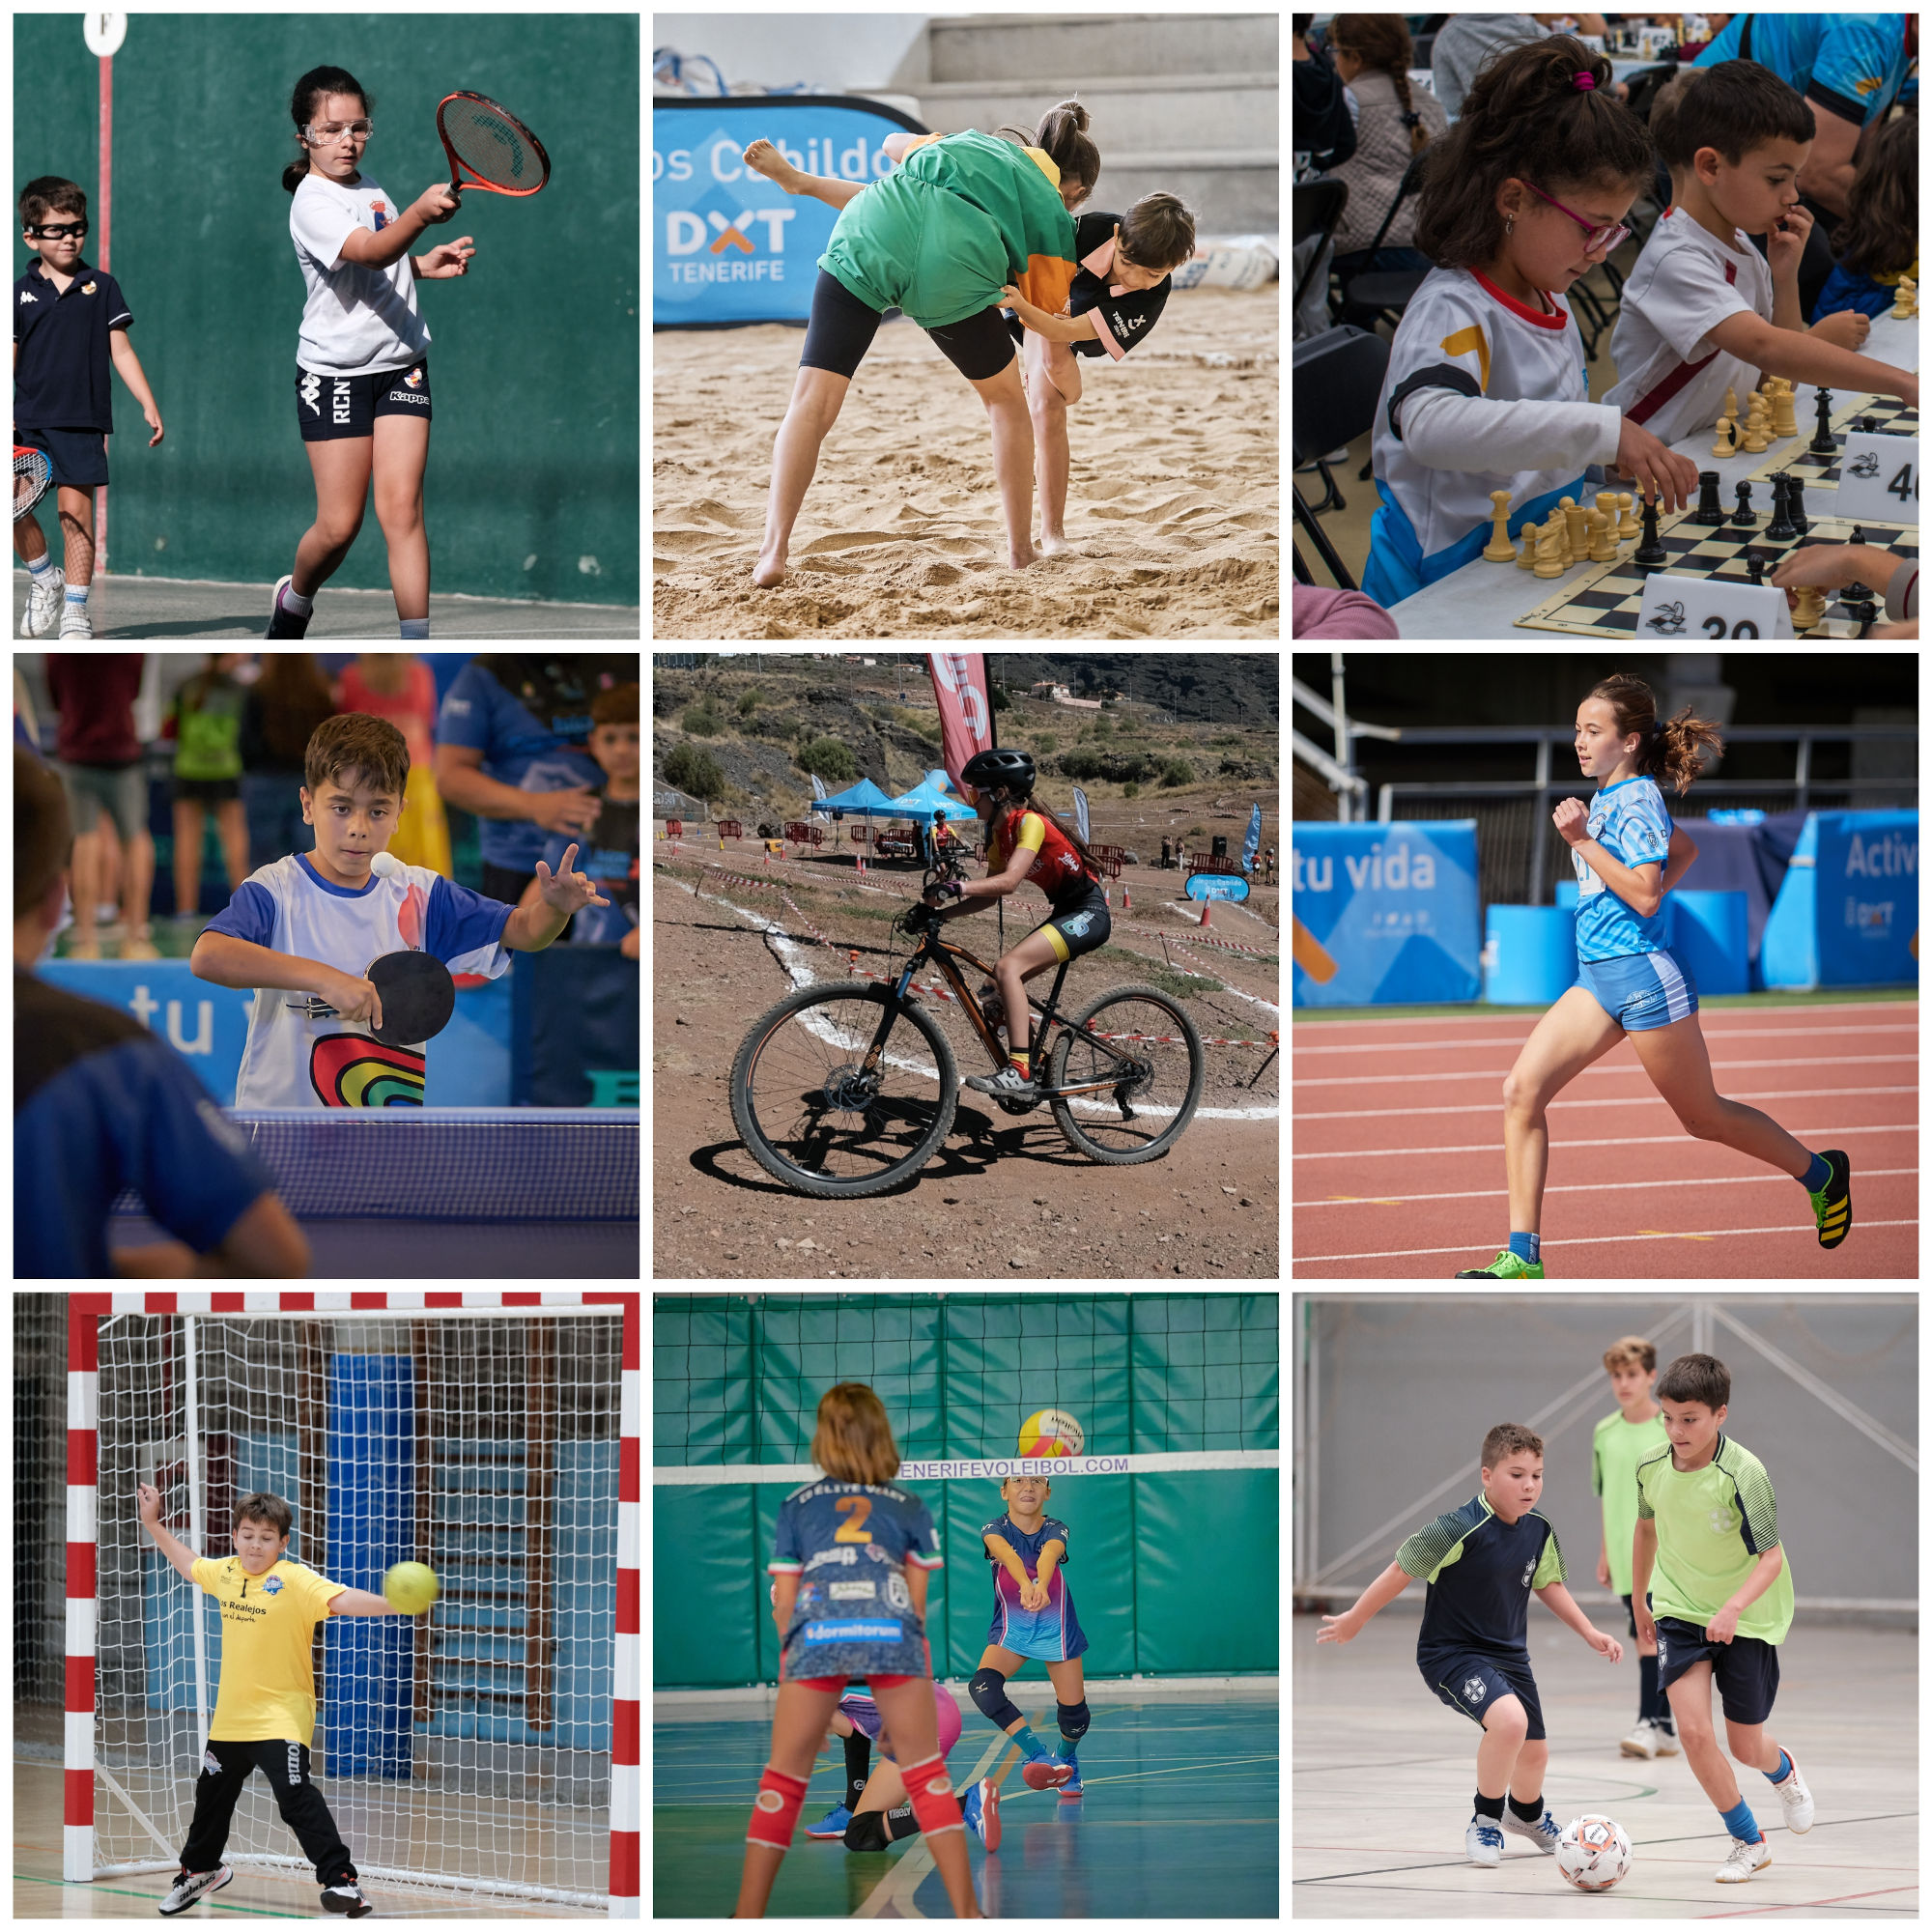 Vuelven los Juegos Cabildo a la agenda deportiva del fin de semana